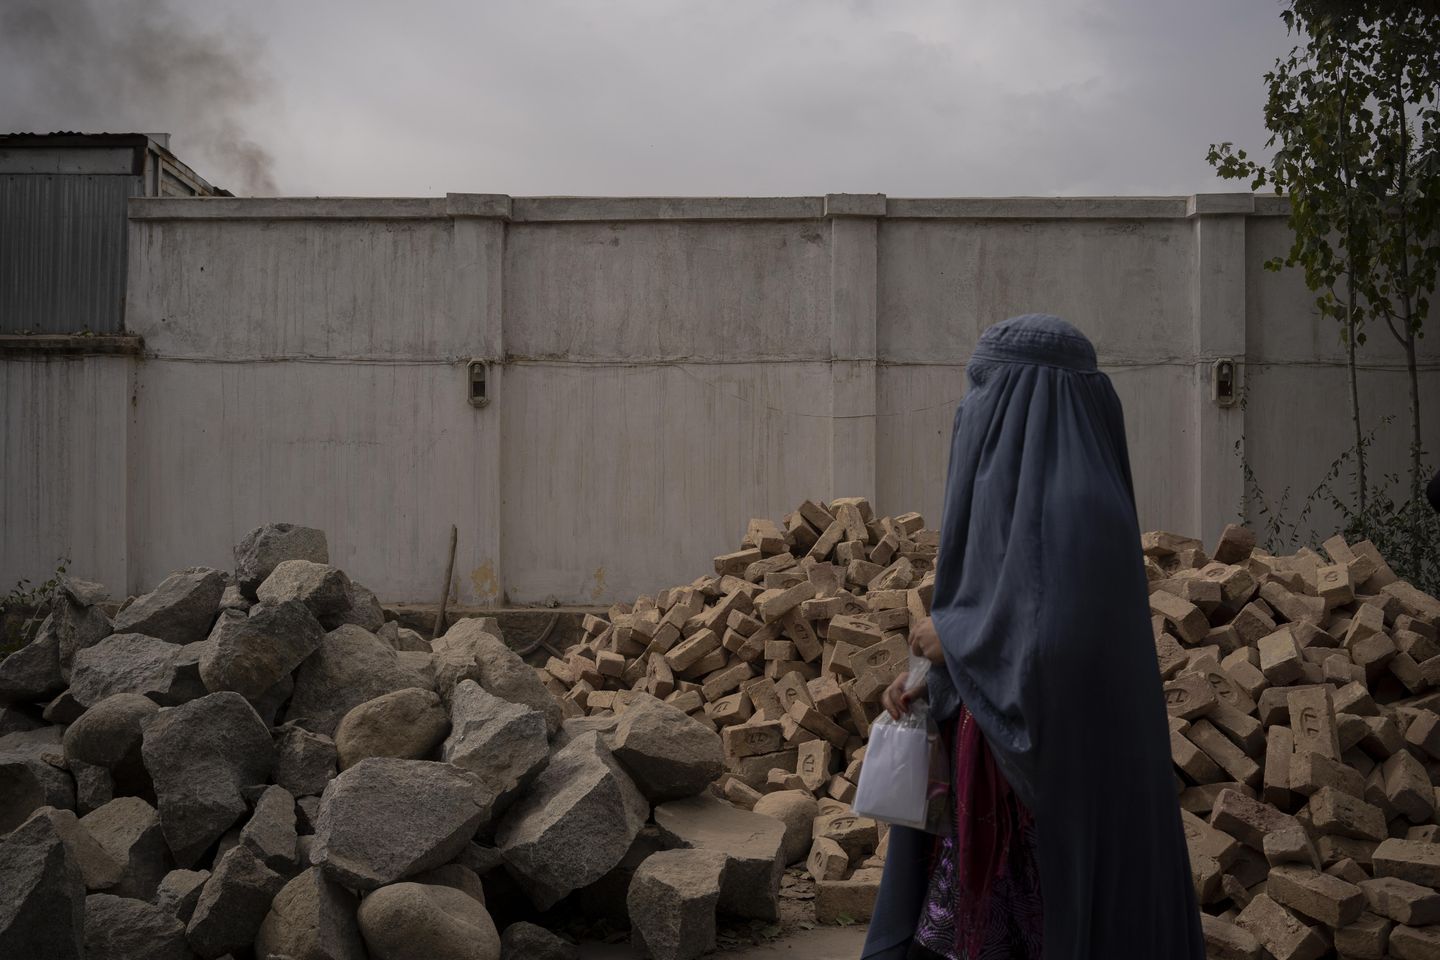 Savunucuları, Taliban'ın devralmasından bir yıl sonra Afganistan'da dini özgürlüğün 'mevcut olmadığını' söylüyorlar